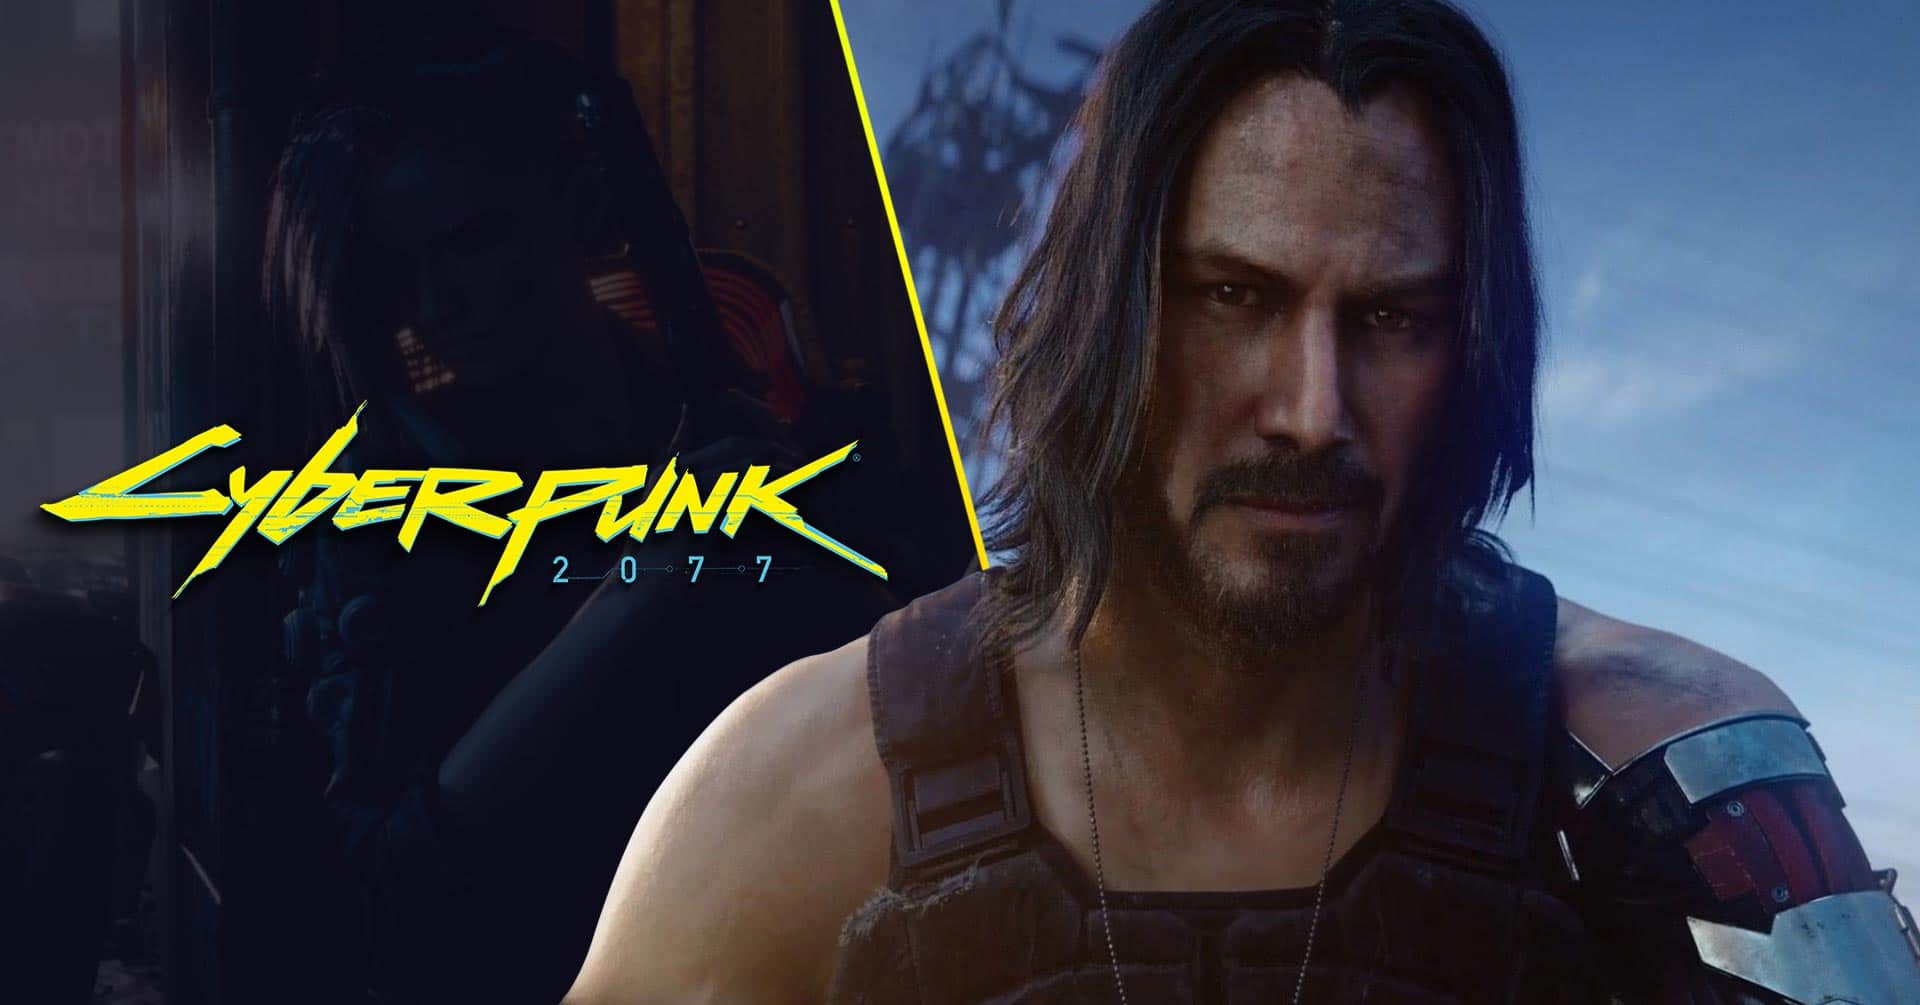 E3 2019: Cyberpunk 2077 Ft. Keanu Reeves - Cinematic Trailer ...